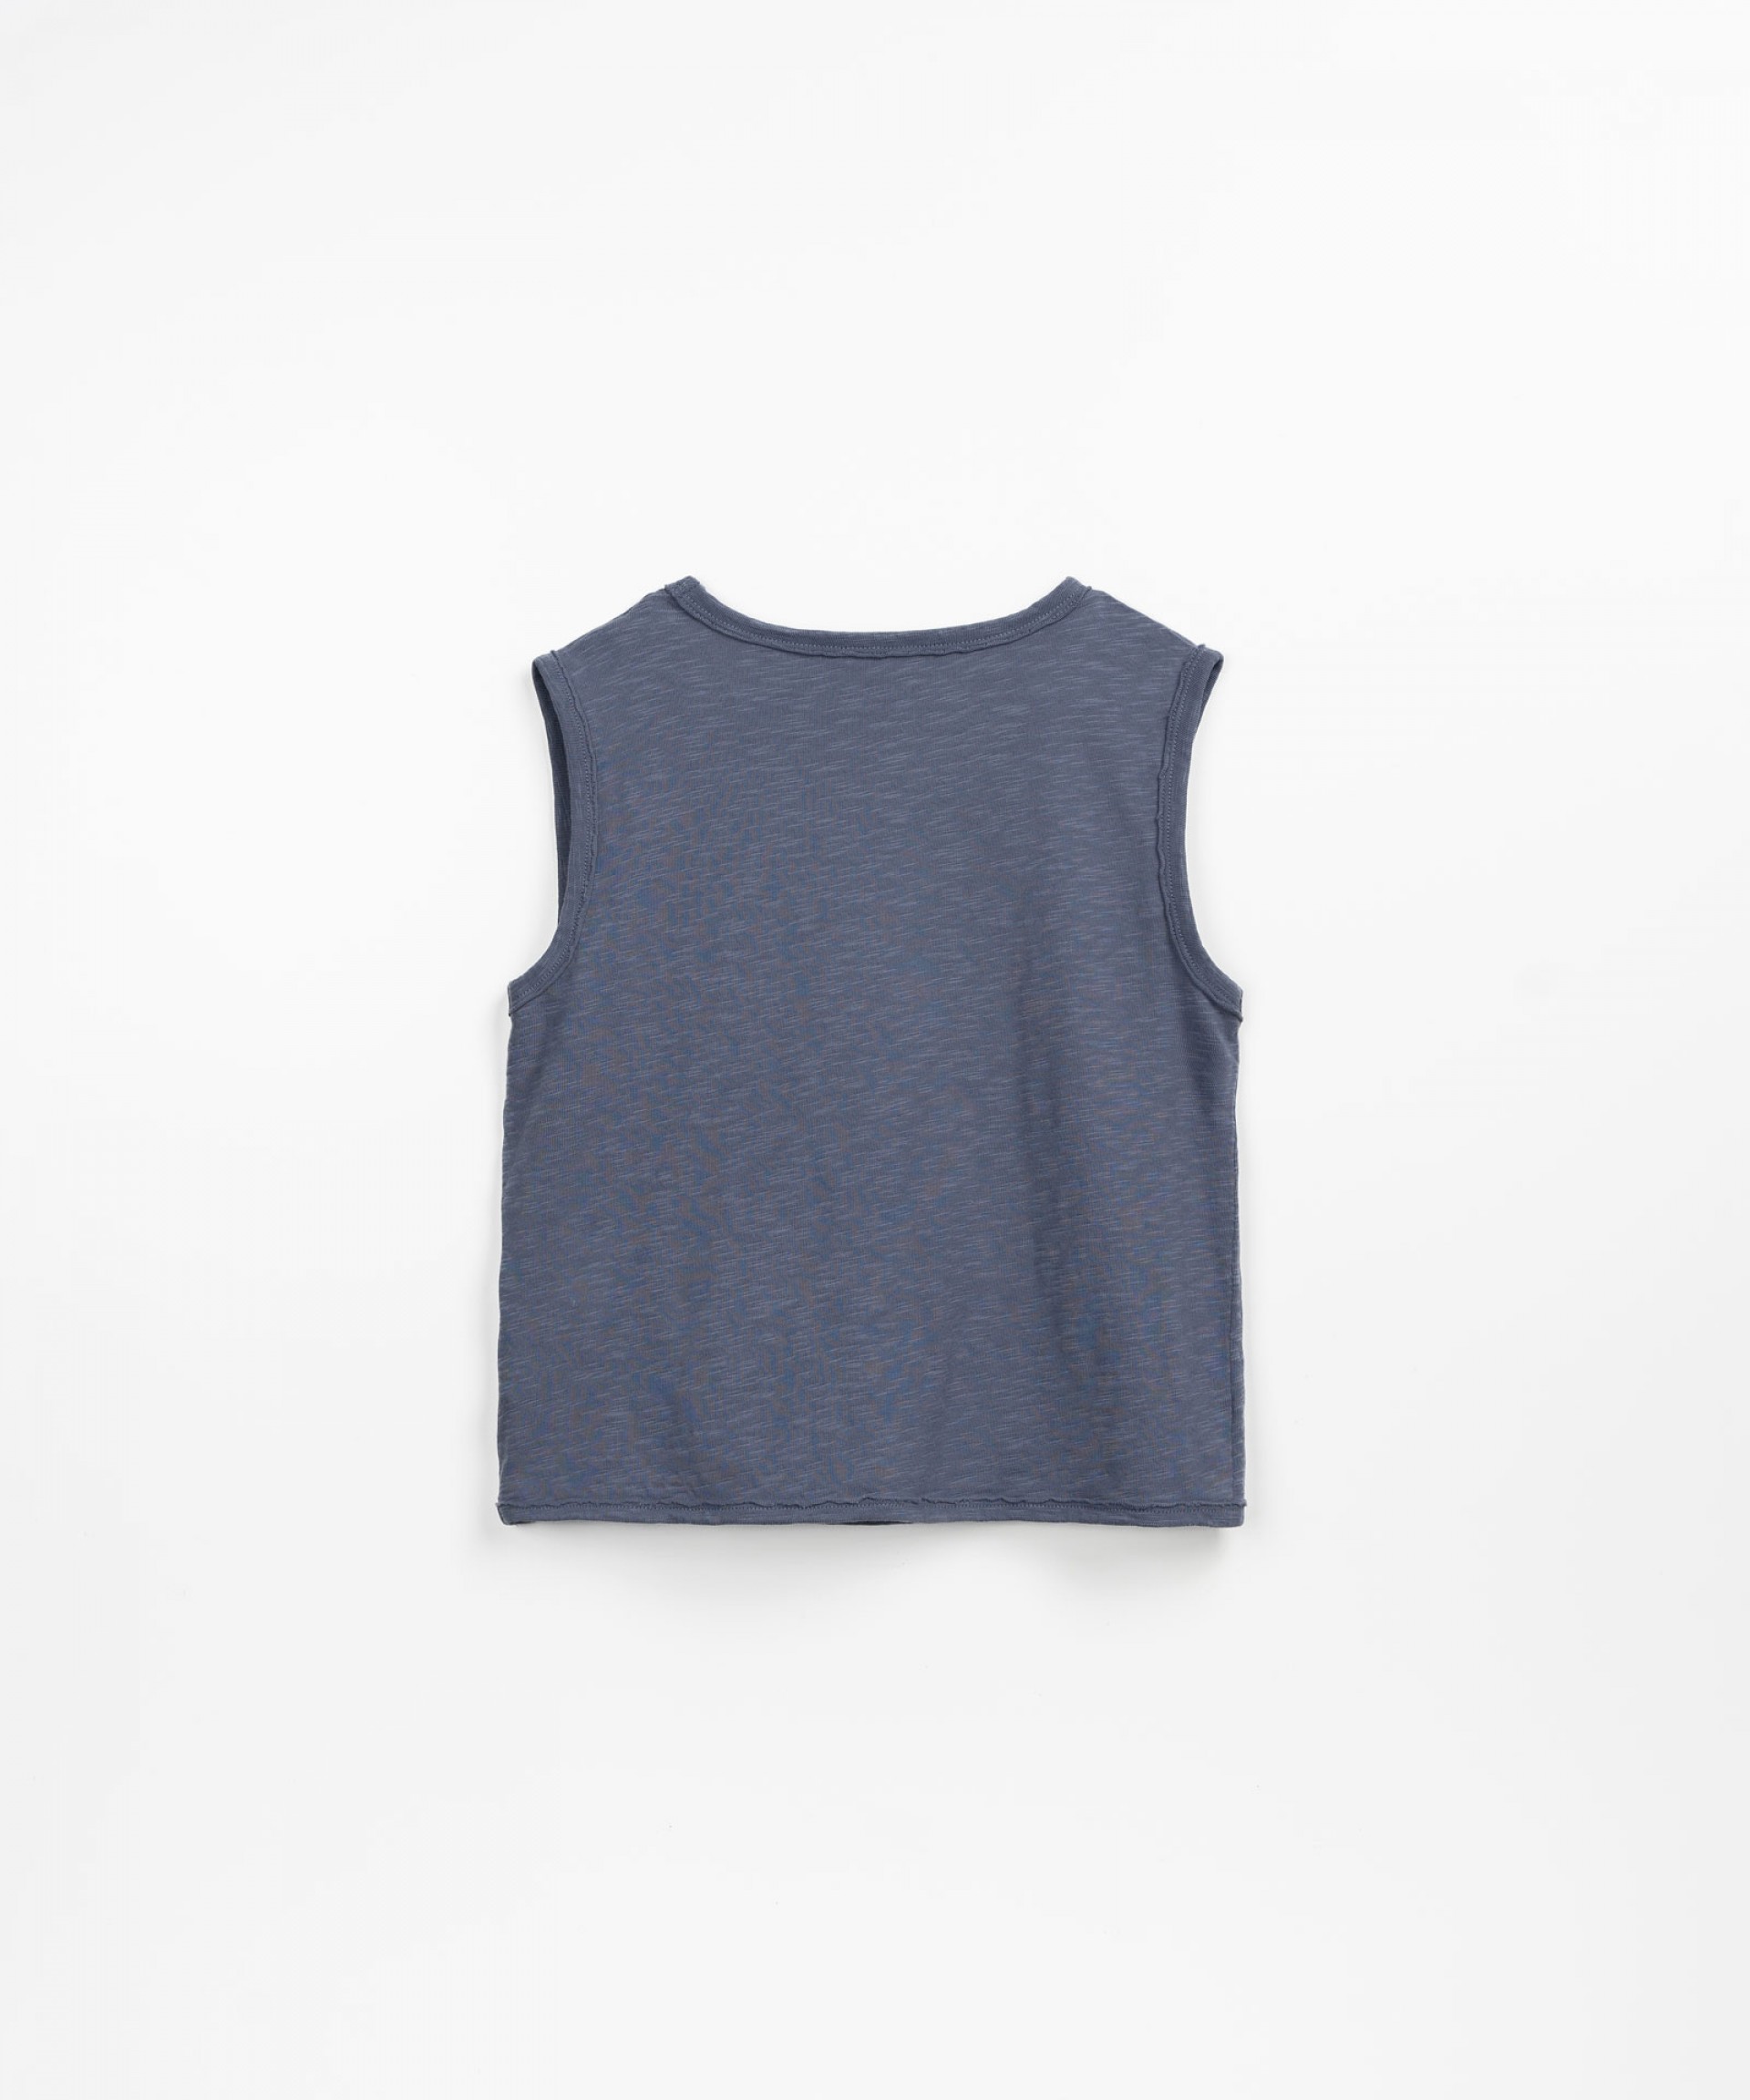 Camiseta sin magas con frase en el pecho | Textile Art